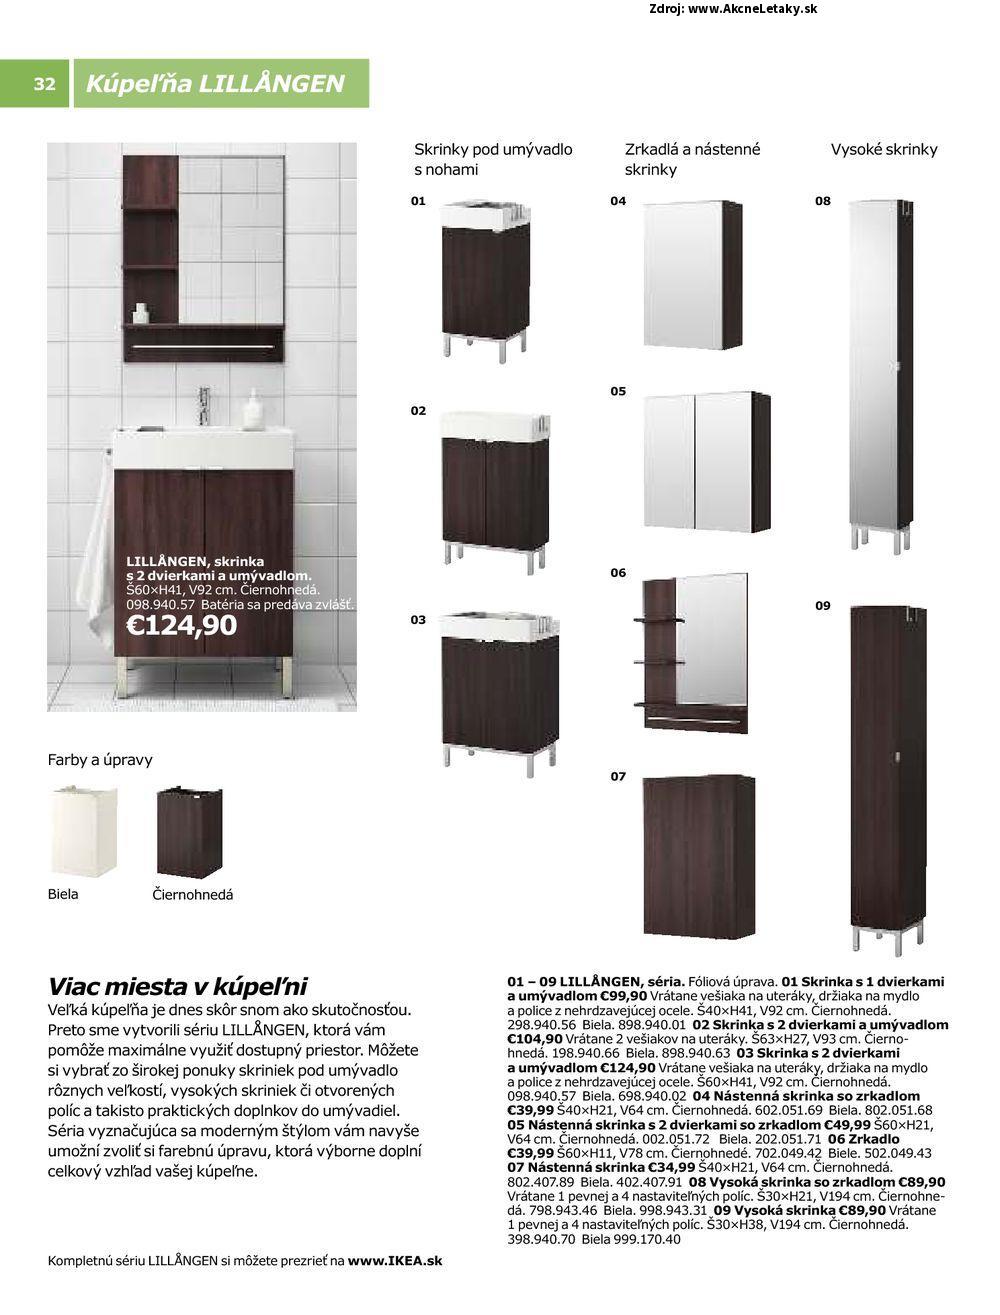 Letk Ikea - strana 32